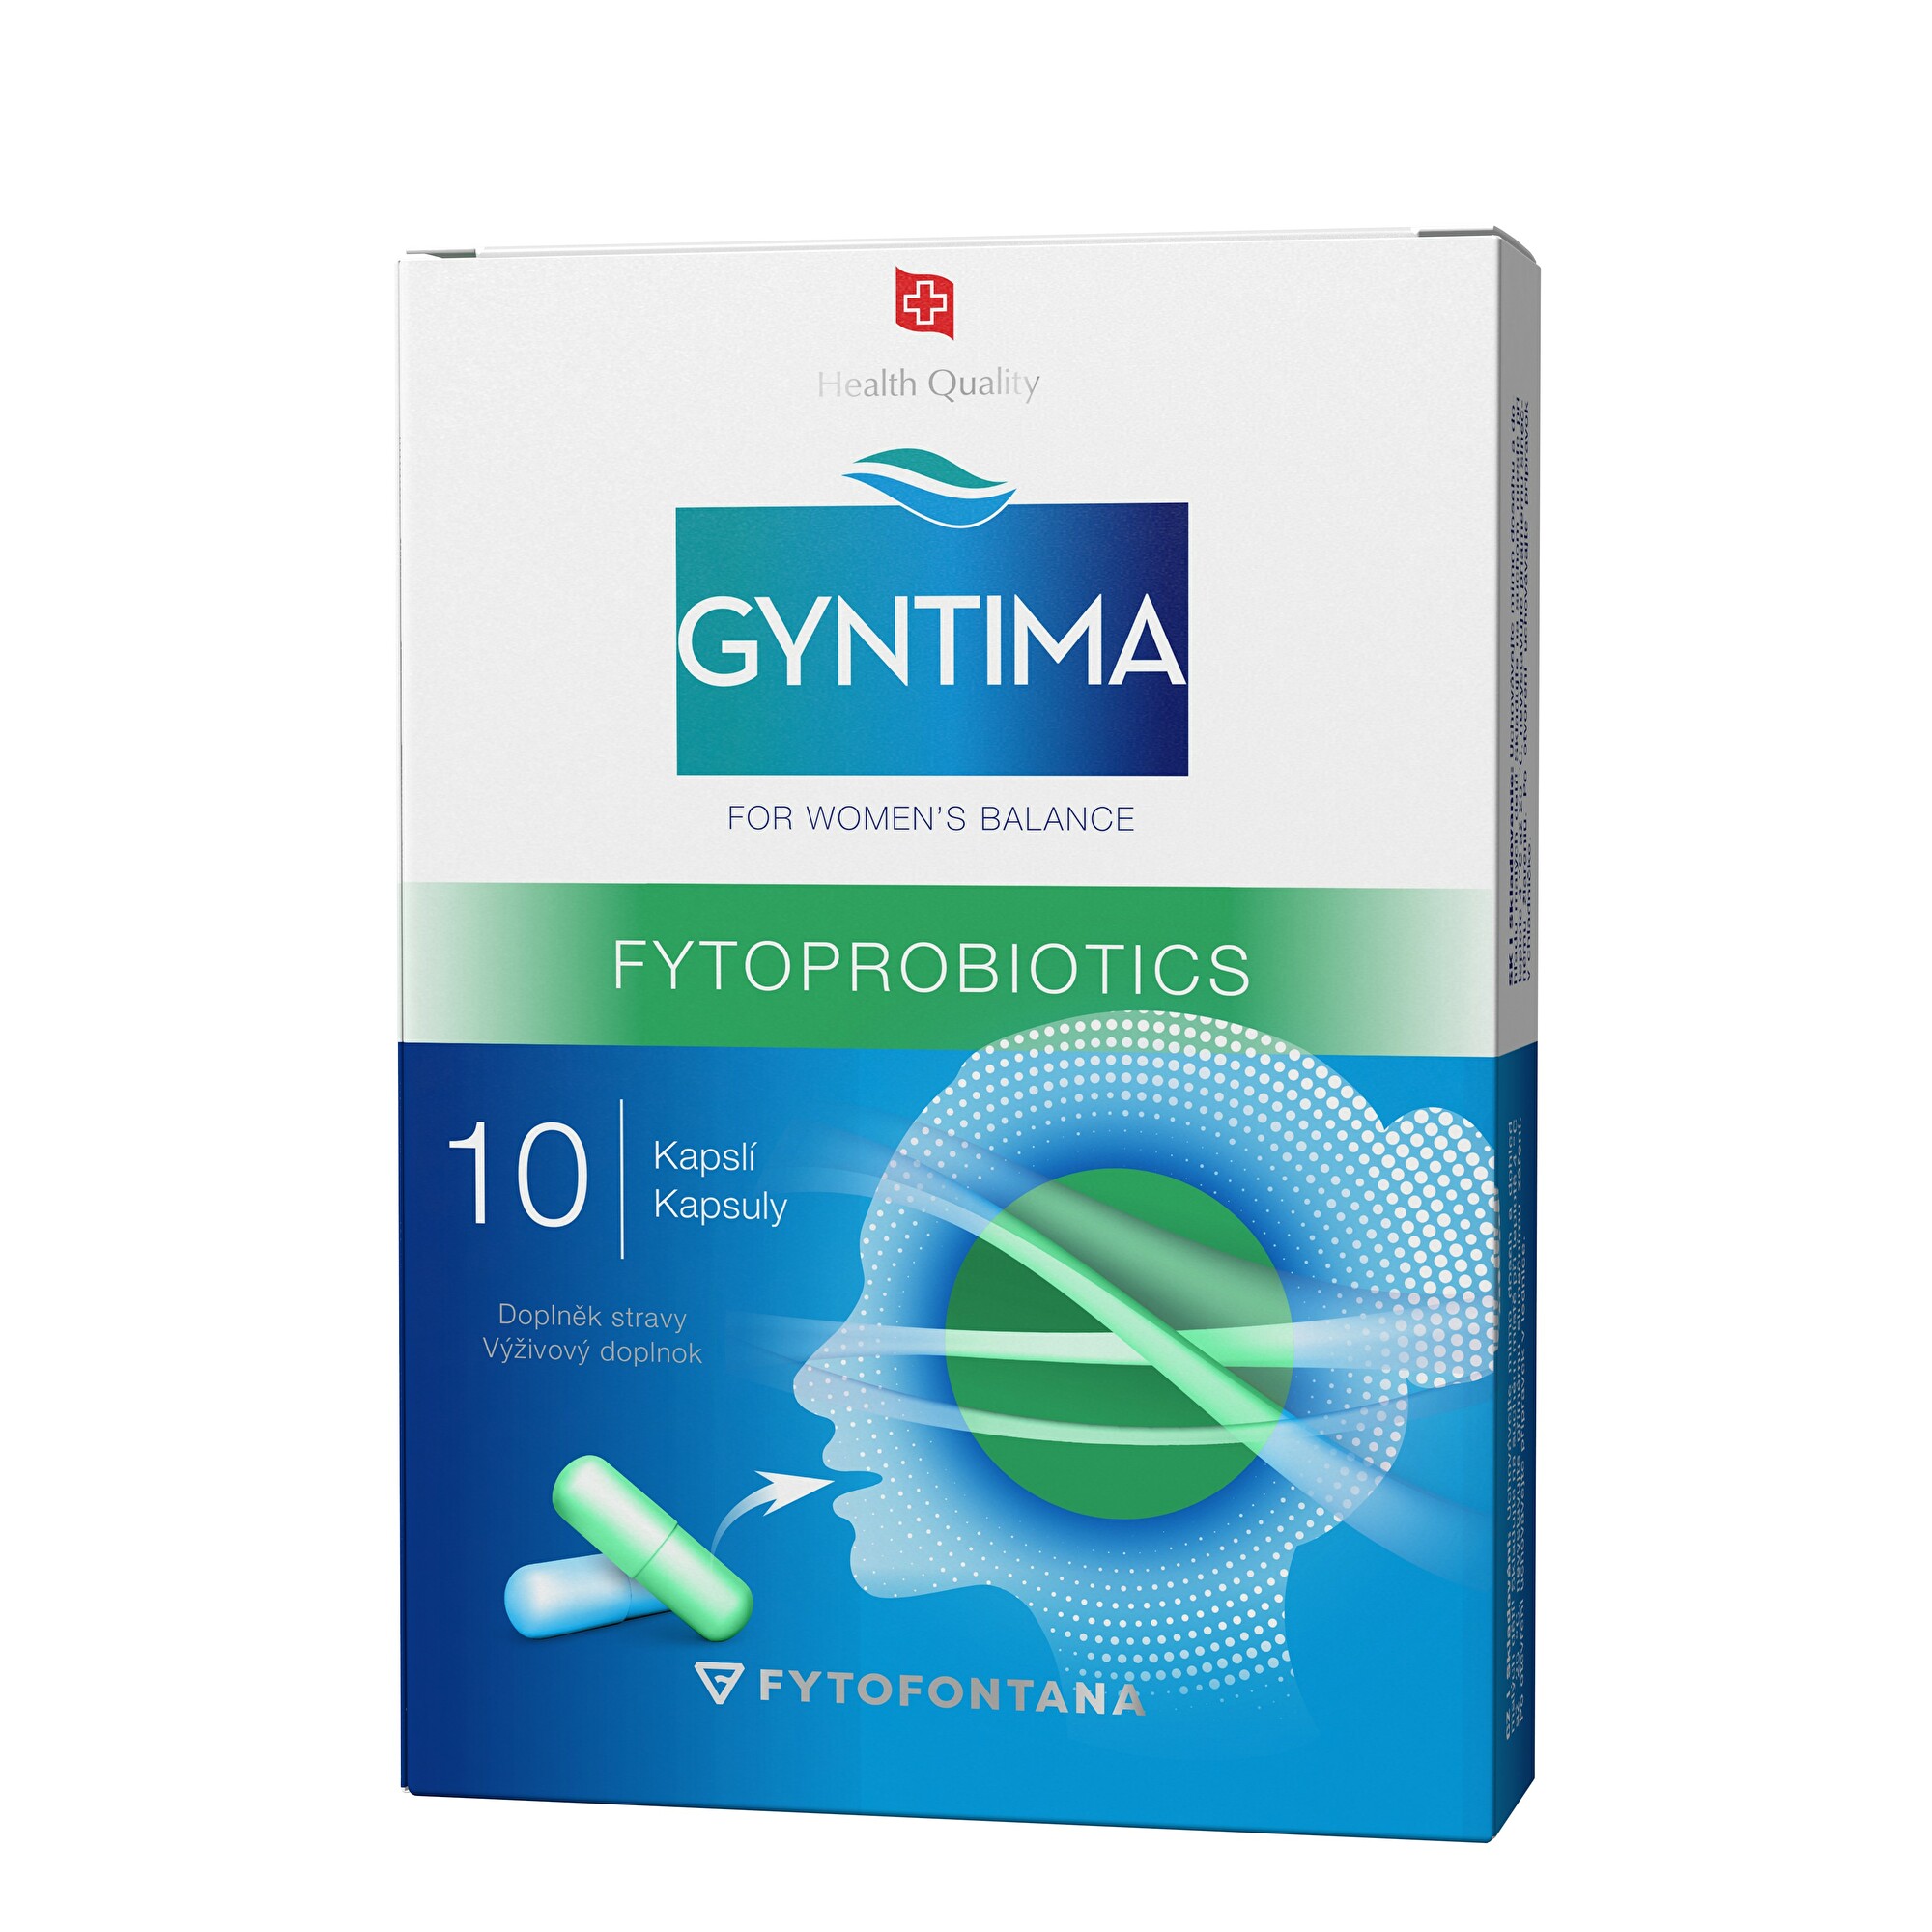 Fytofontana Gyntima fytoprobiotics 10 kapslí